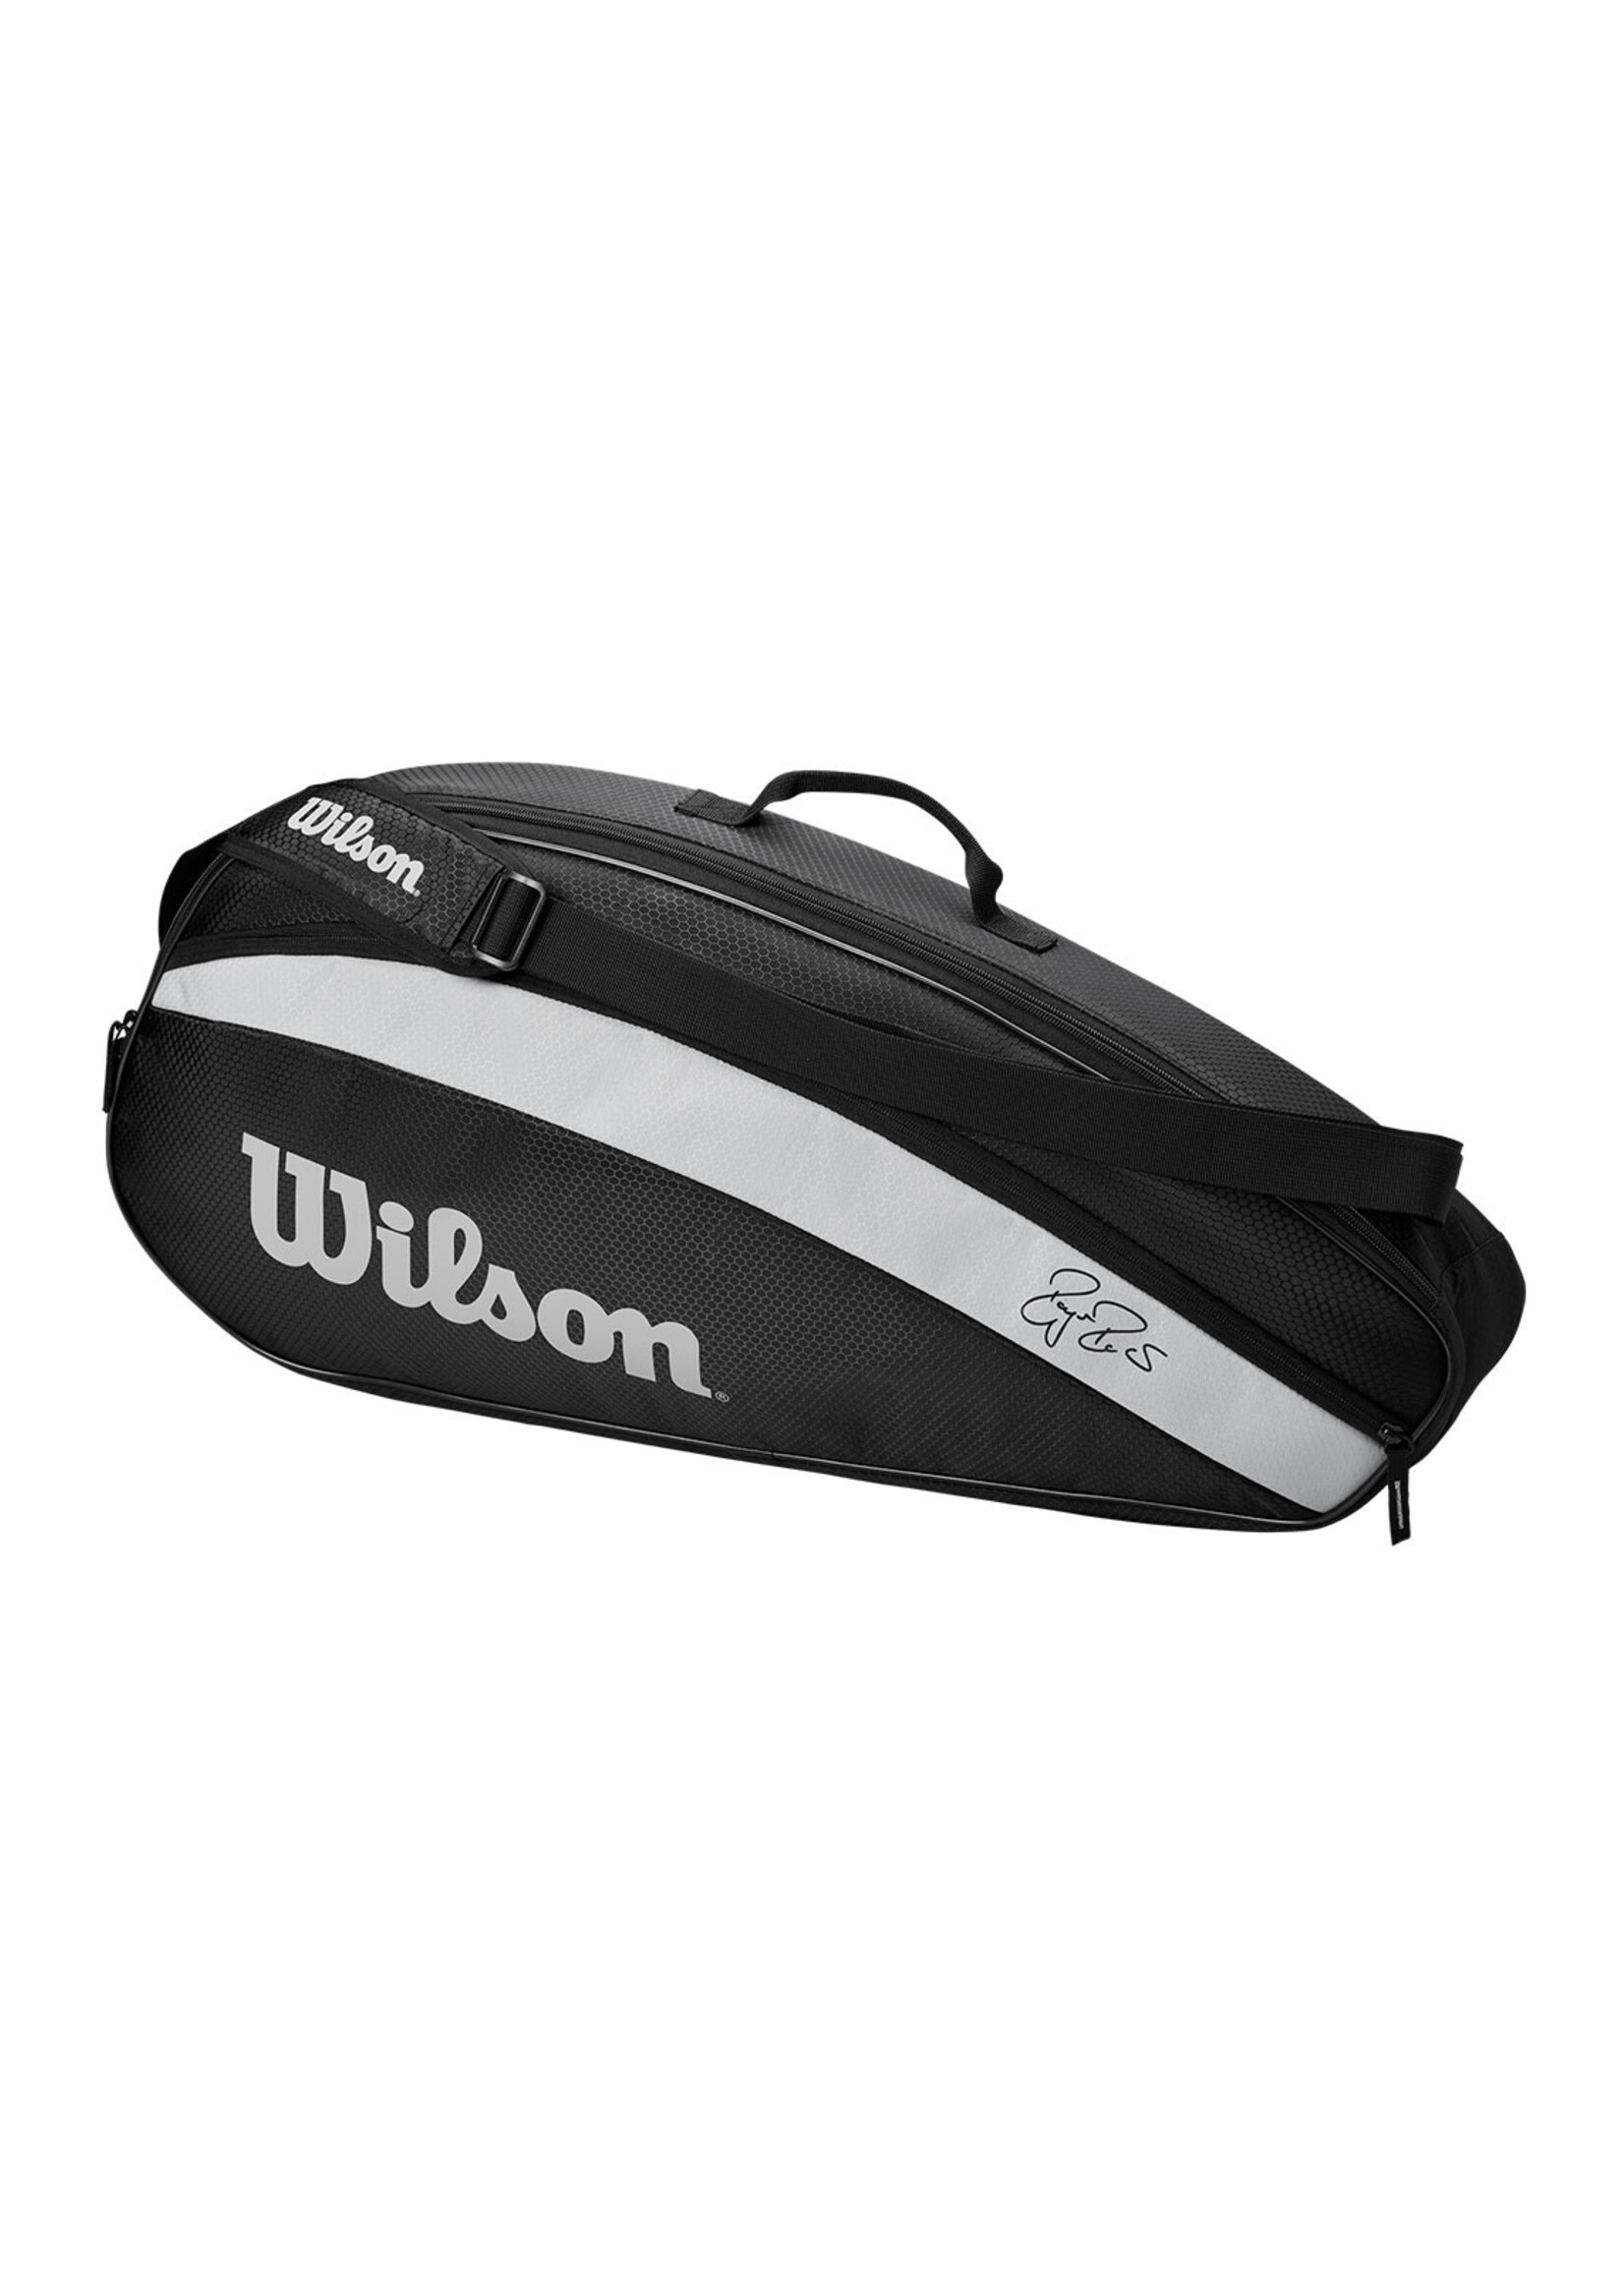 Wilson Wilson RF Team 3 Pack Tennis Bag